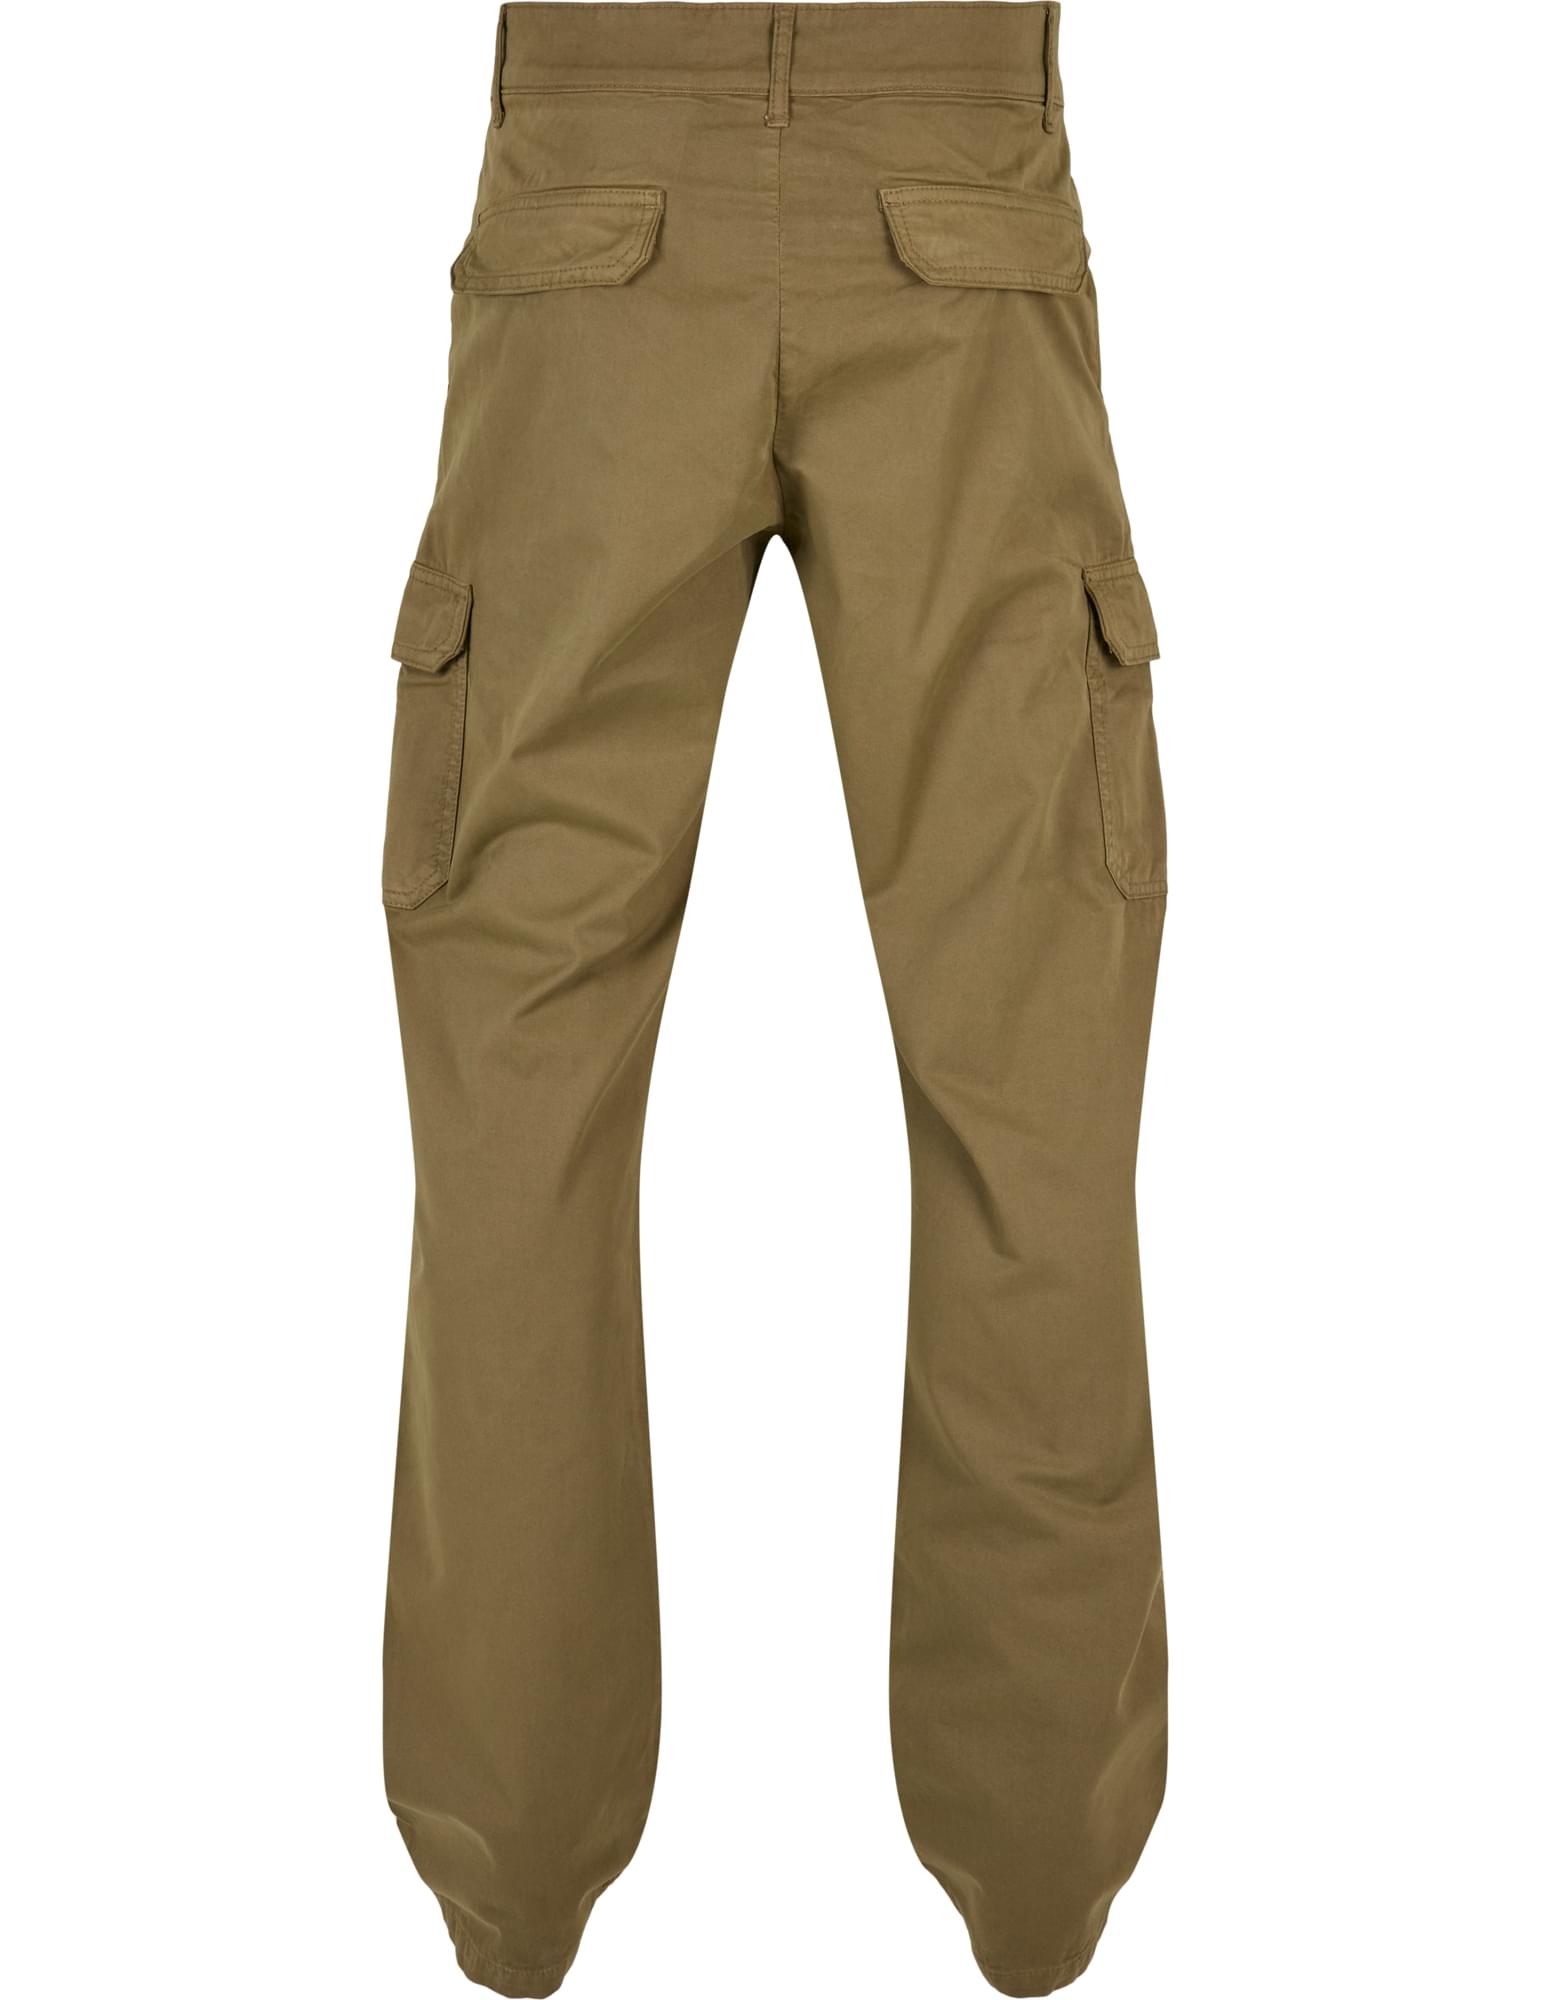 CLASSICS Men's Cargo Pants